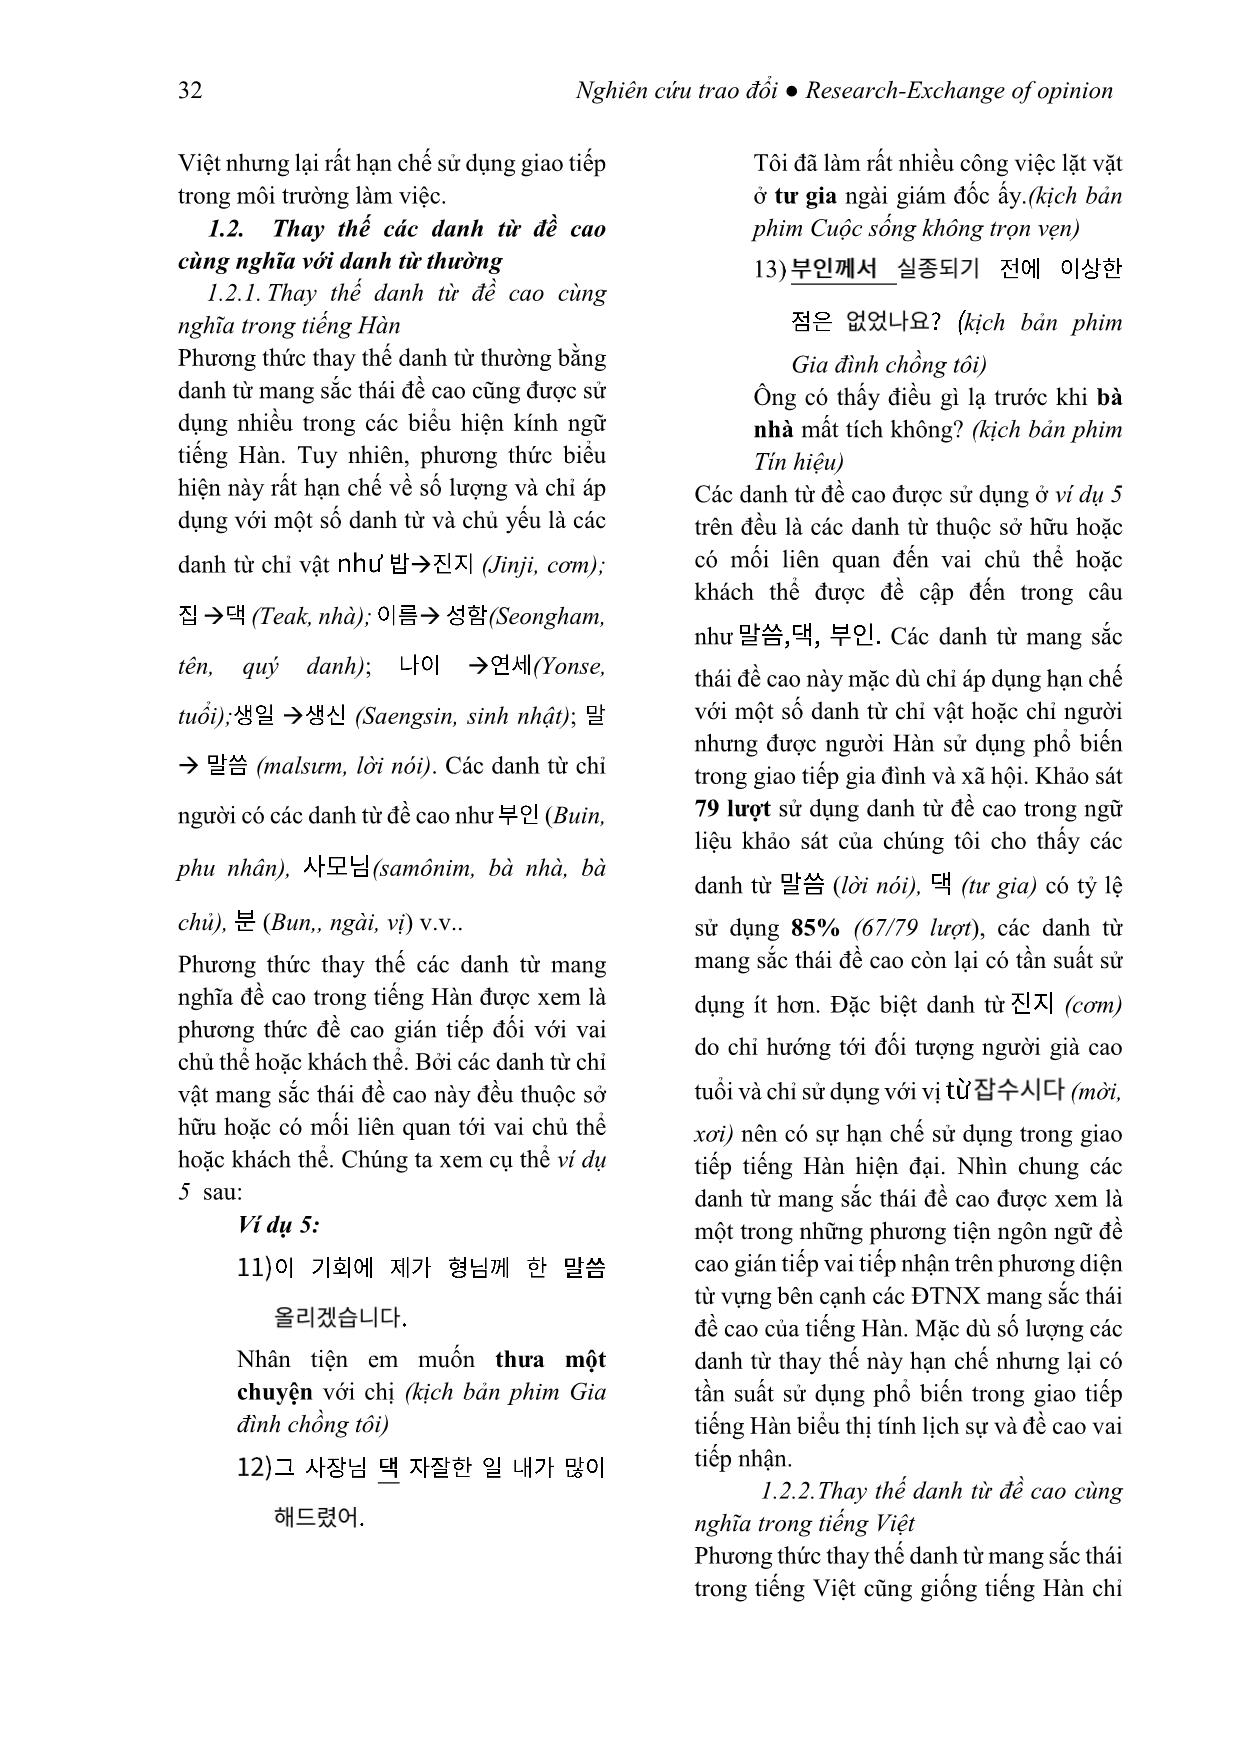 Kính ngữ tiếng Hàn qua phương thức thay thế từ vựng (Xét trong mối tương quan với tiếng Việt) trang 6